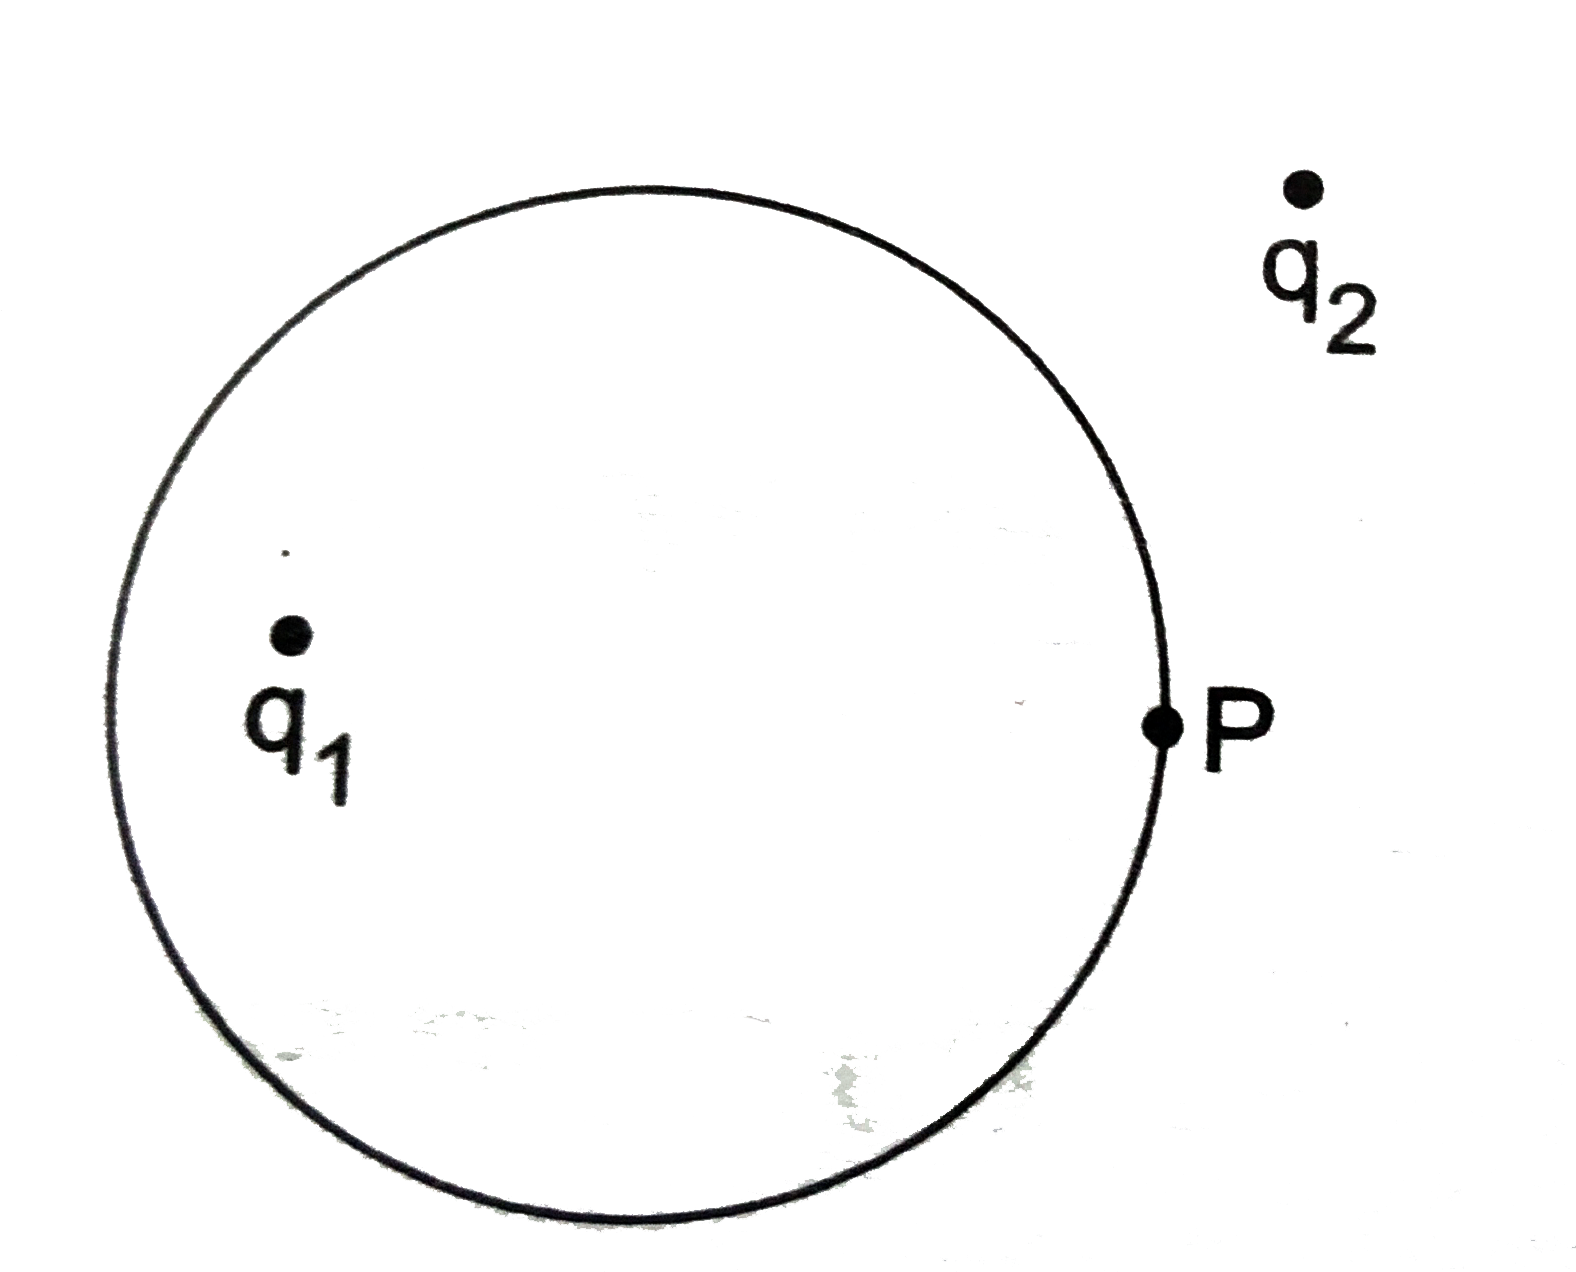 चित्र में प्रदर्शित काल्पनिक गोलीय तल (imaginary spherical surface ) पर कोई बिंदु P लिया गया है ।